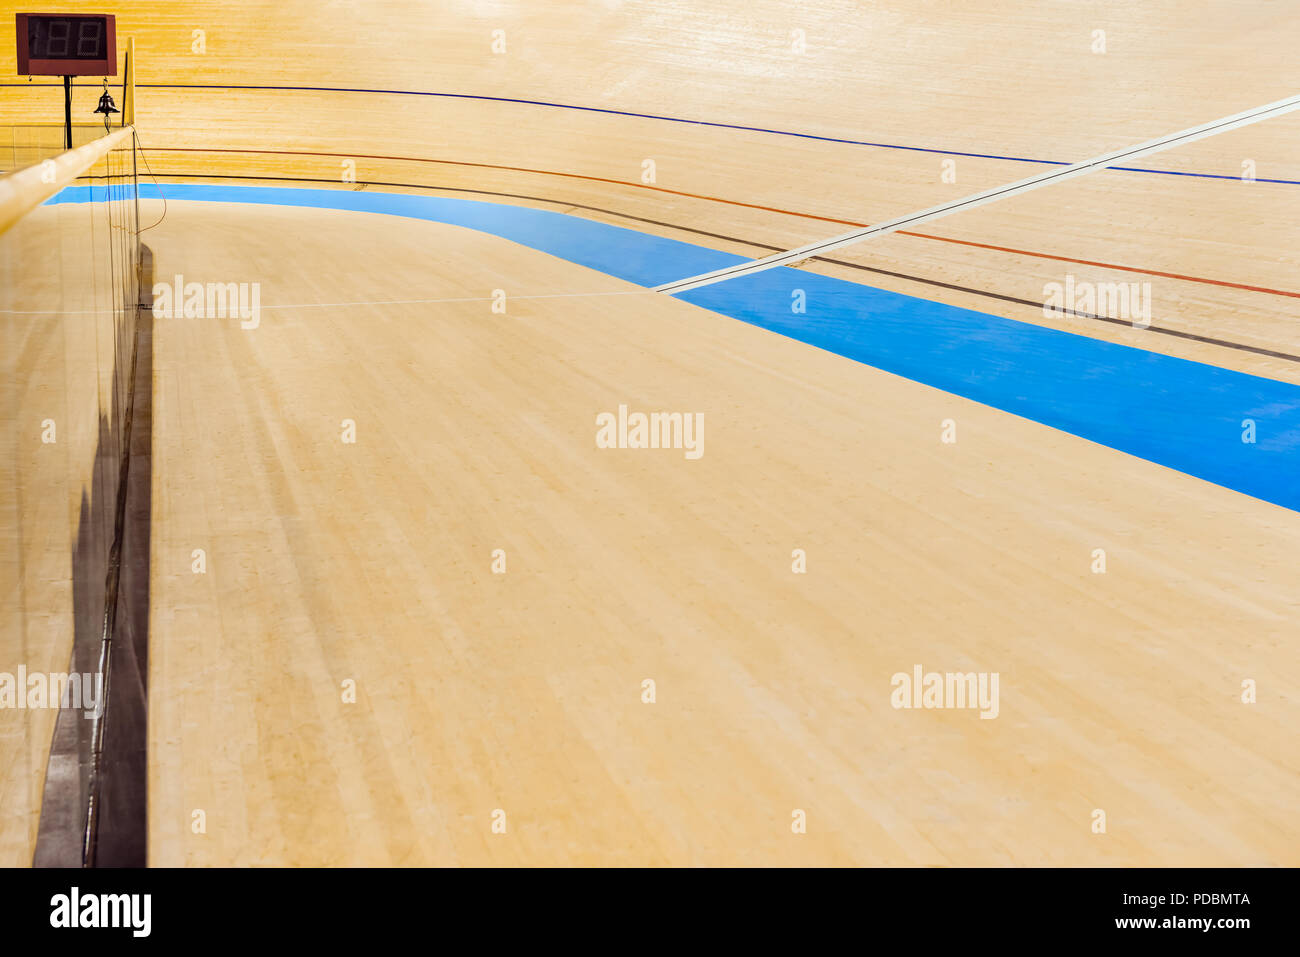 Velodrom radfahren Spur leer gekrümmte hohe Holzboden mit Markierungen, Trinidad und Tobago, Sport Veranstaltungsort. Stockfoto